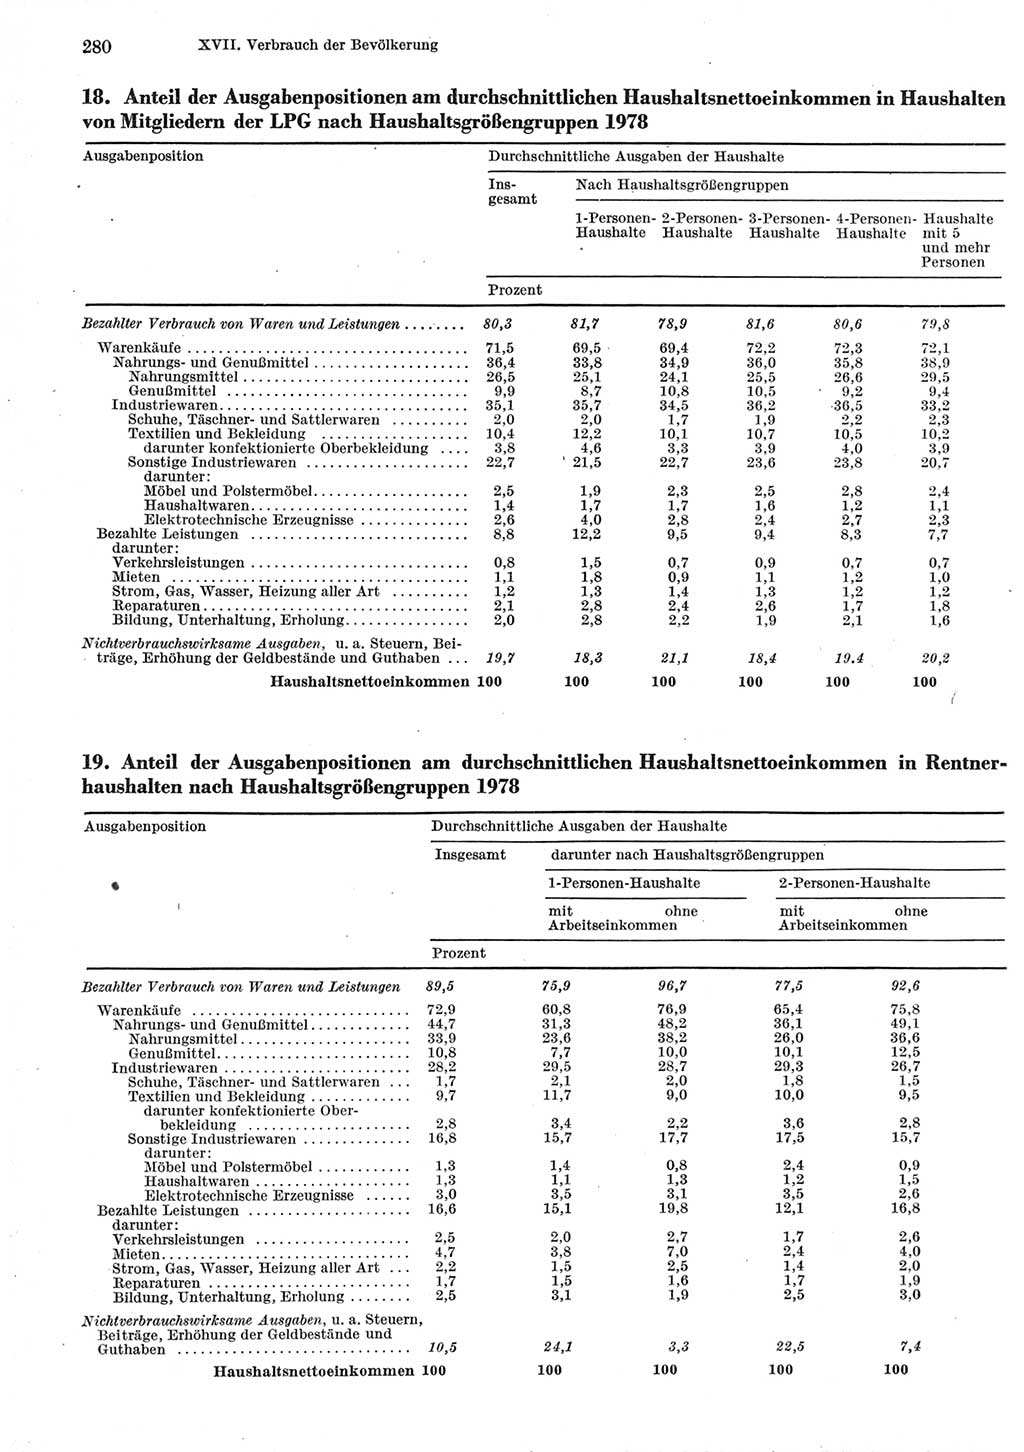 Statistisches Jahrbuch der Deutschen Demokratischen Republik (DDR) 1979, Seite 280 (Stat. Jb. DDR 1979, S. 280)